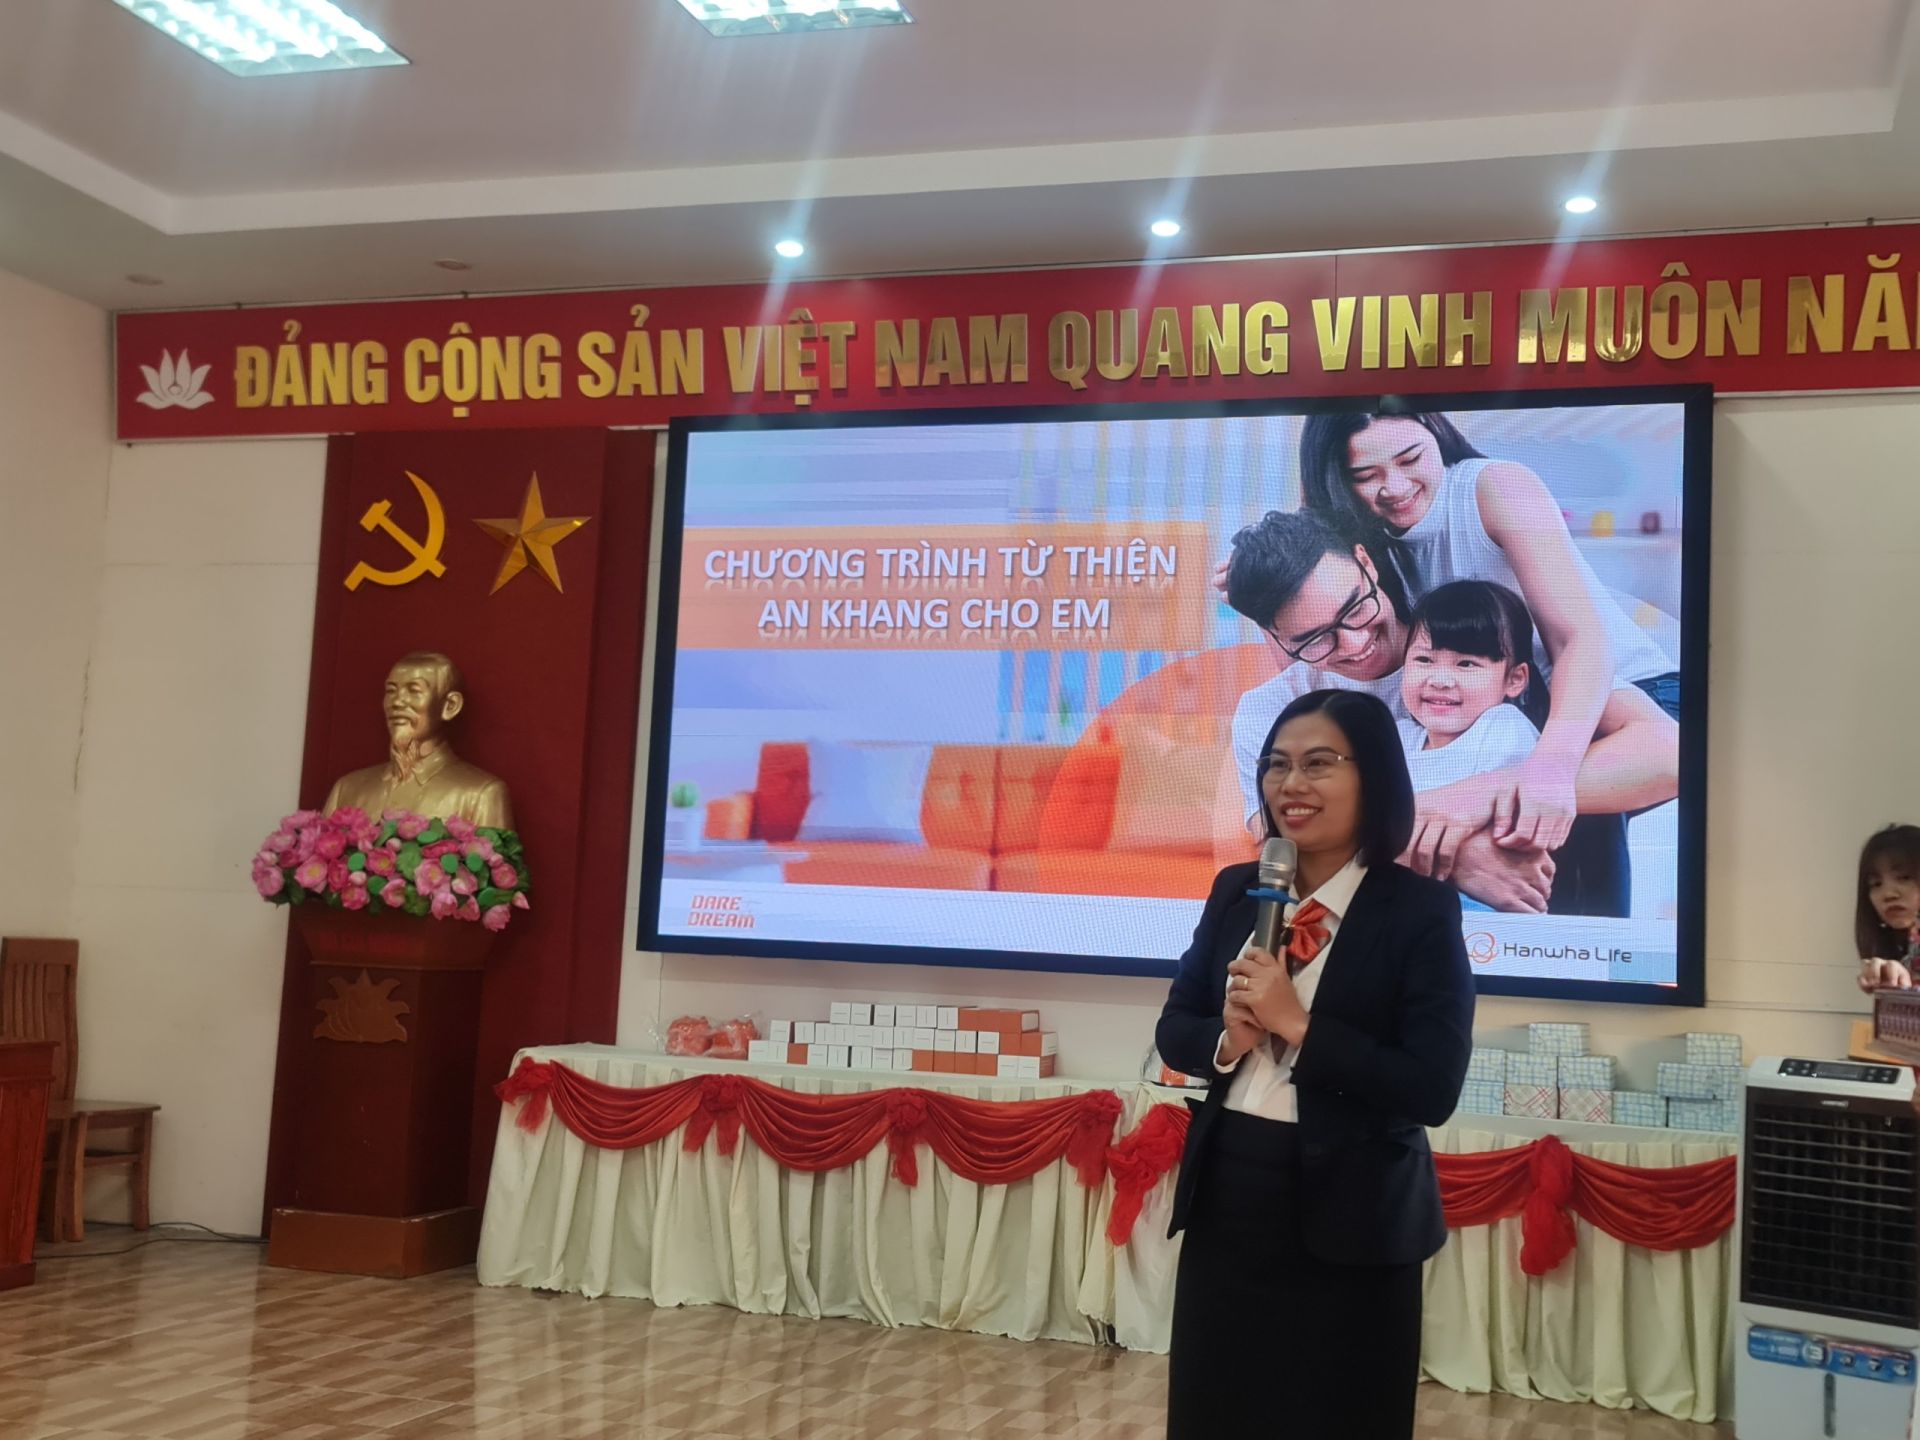 Chị Đỗ Thị Hằng - Giám Đốc Kinh doanh VP Phú Thọ 05 chia sẻ về BHNT